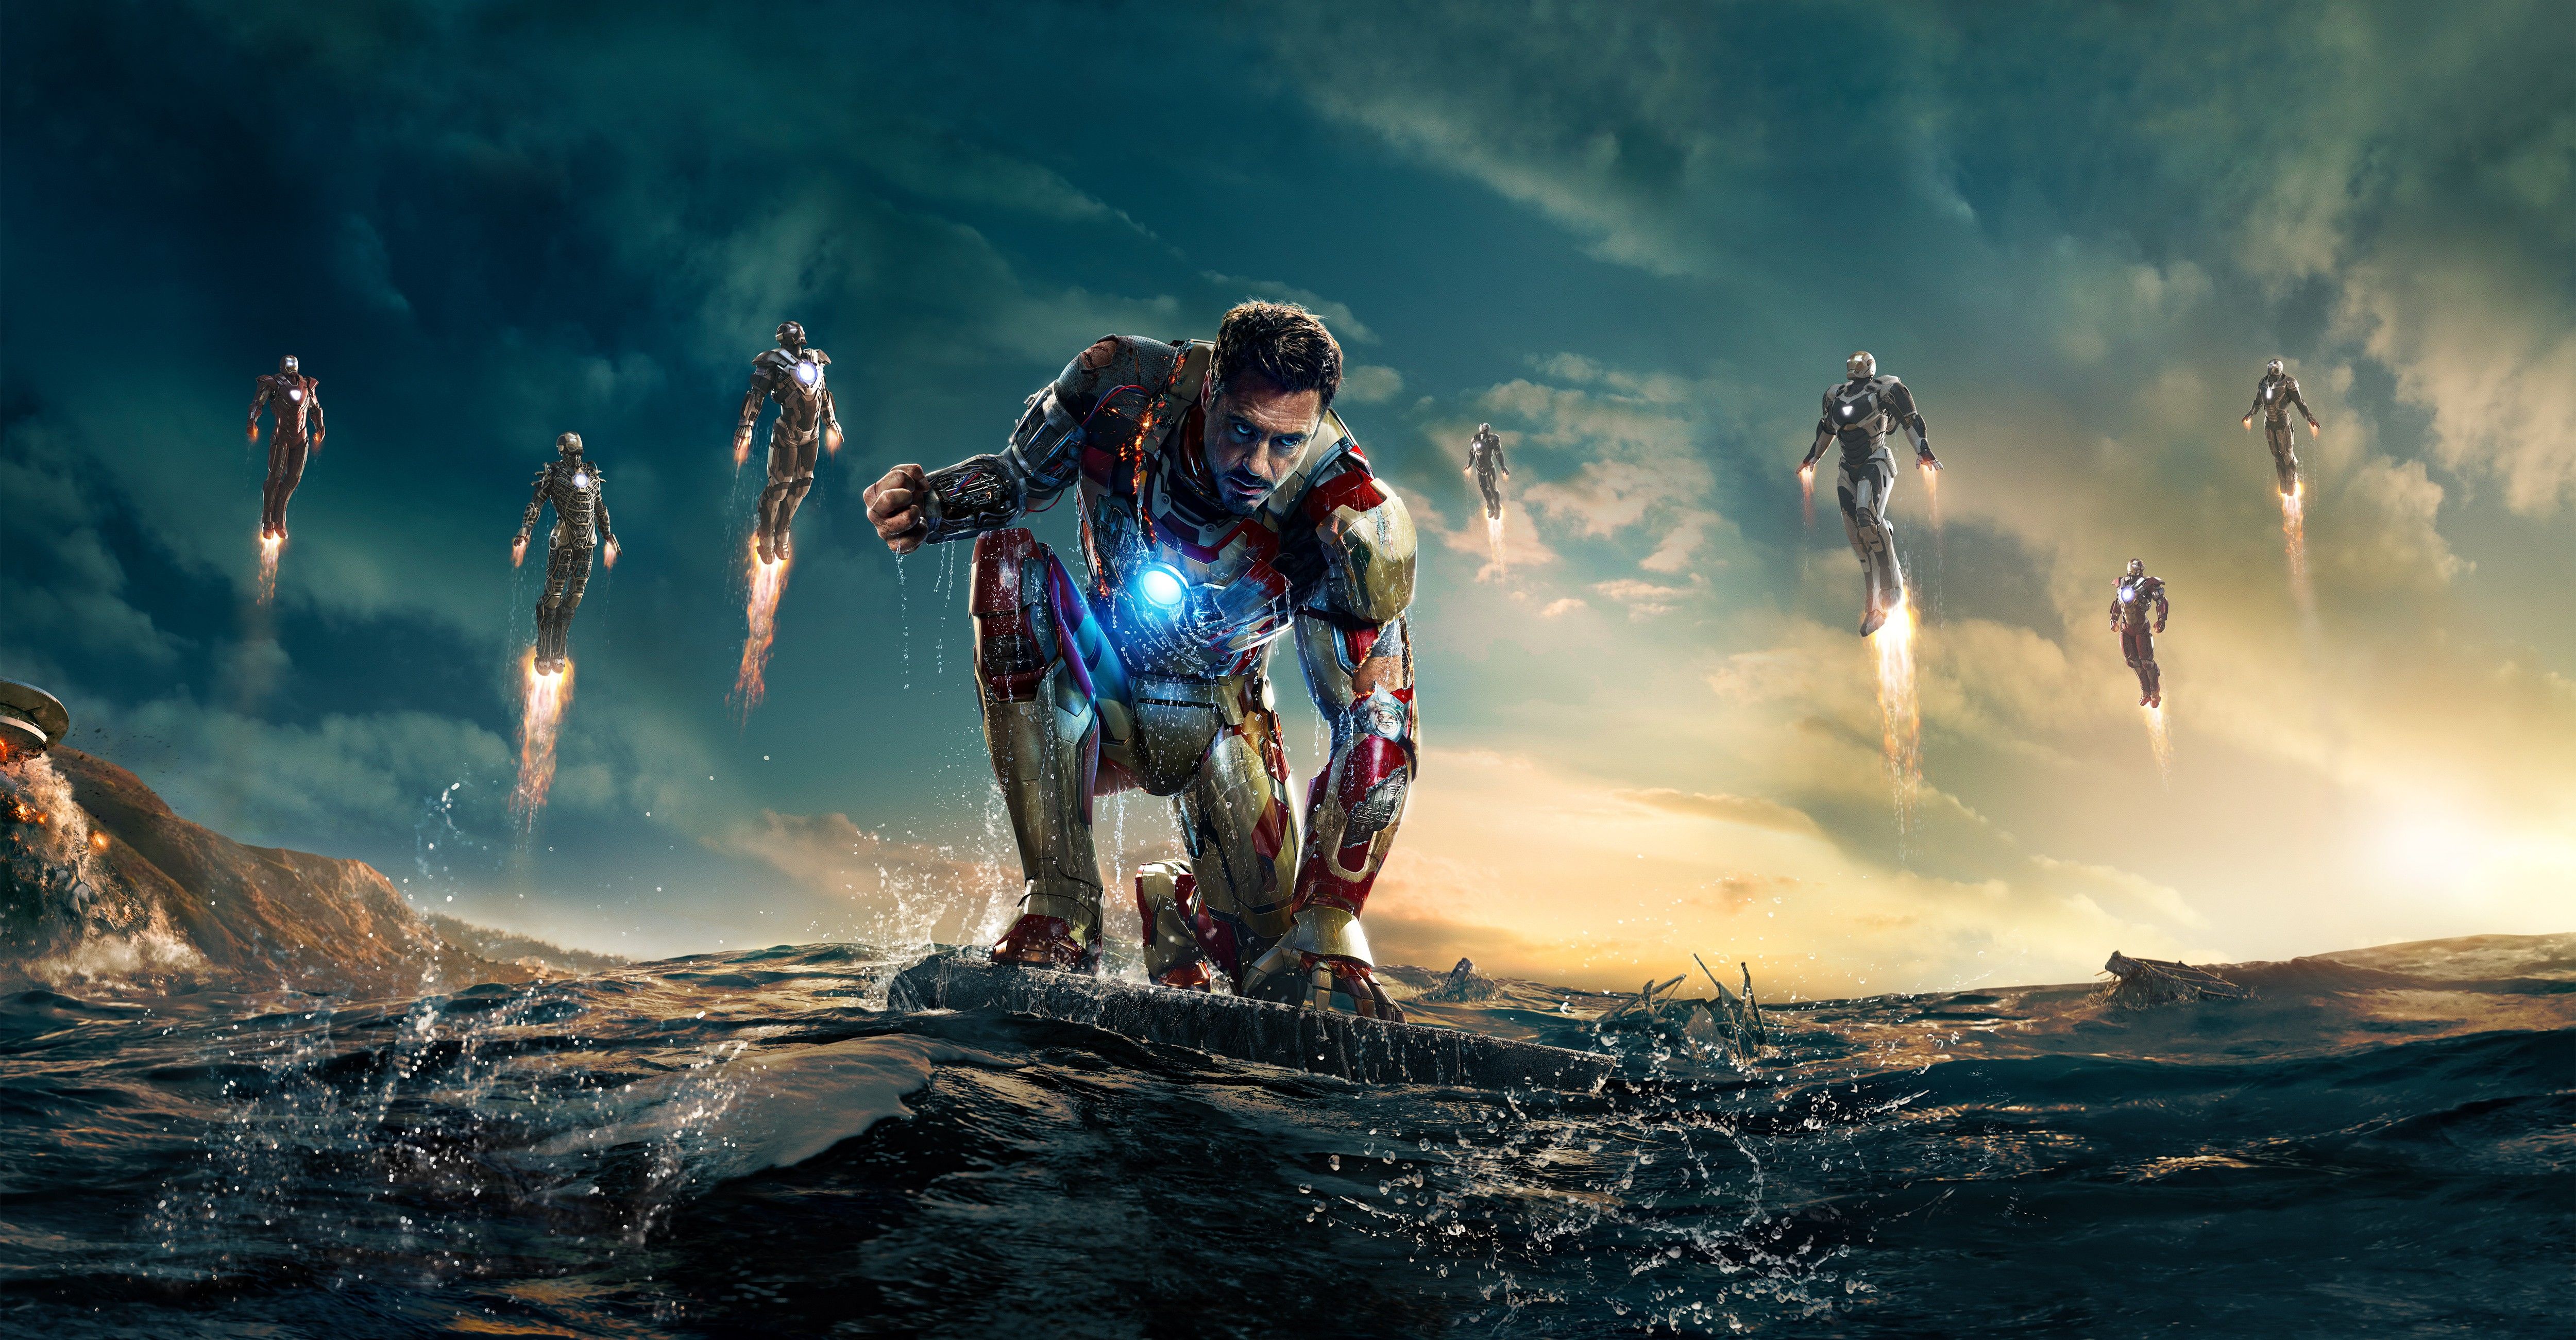 Поменялся рабочий стол. Железный человек 3. Тони Старк. «Железный человек 3» (Iron man 3, 2013).